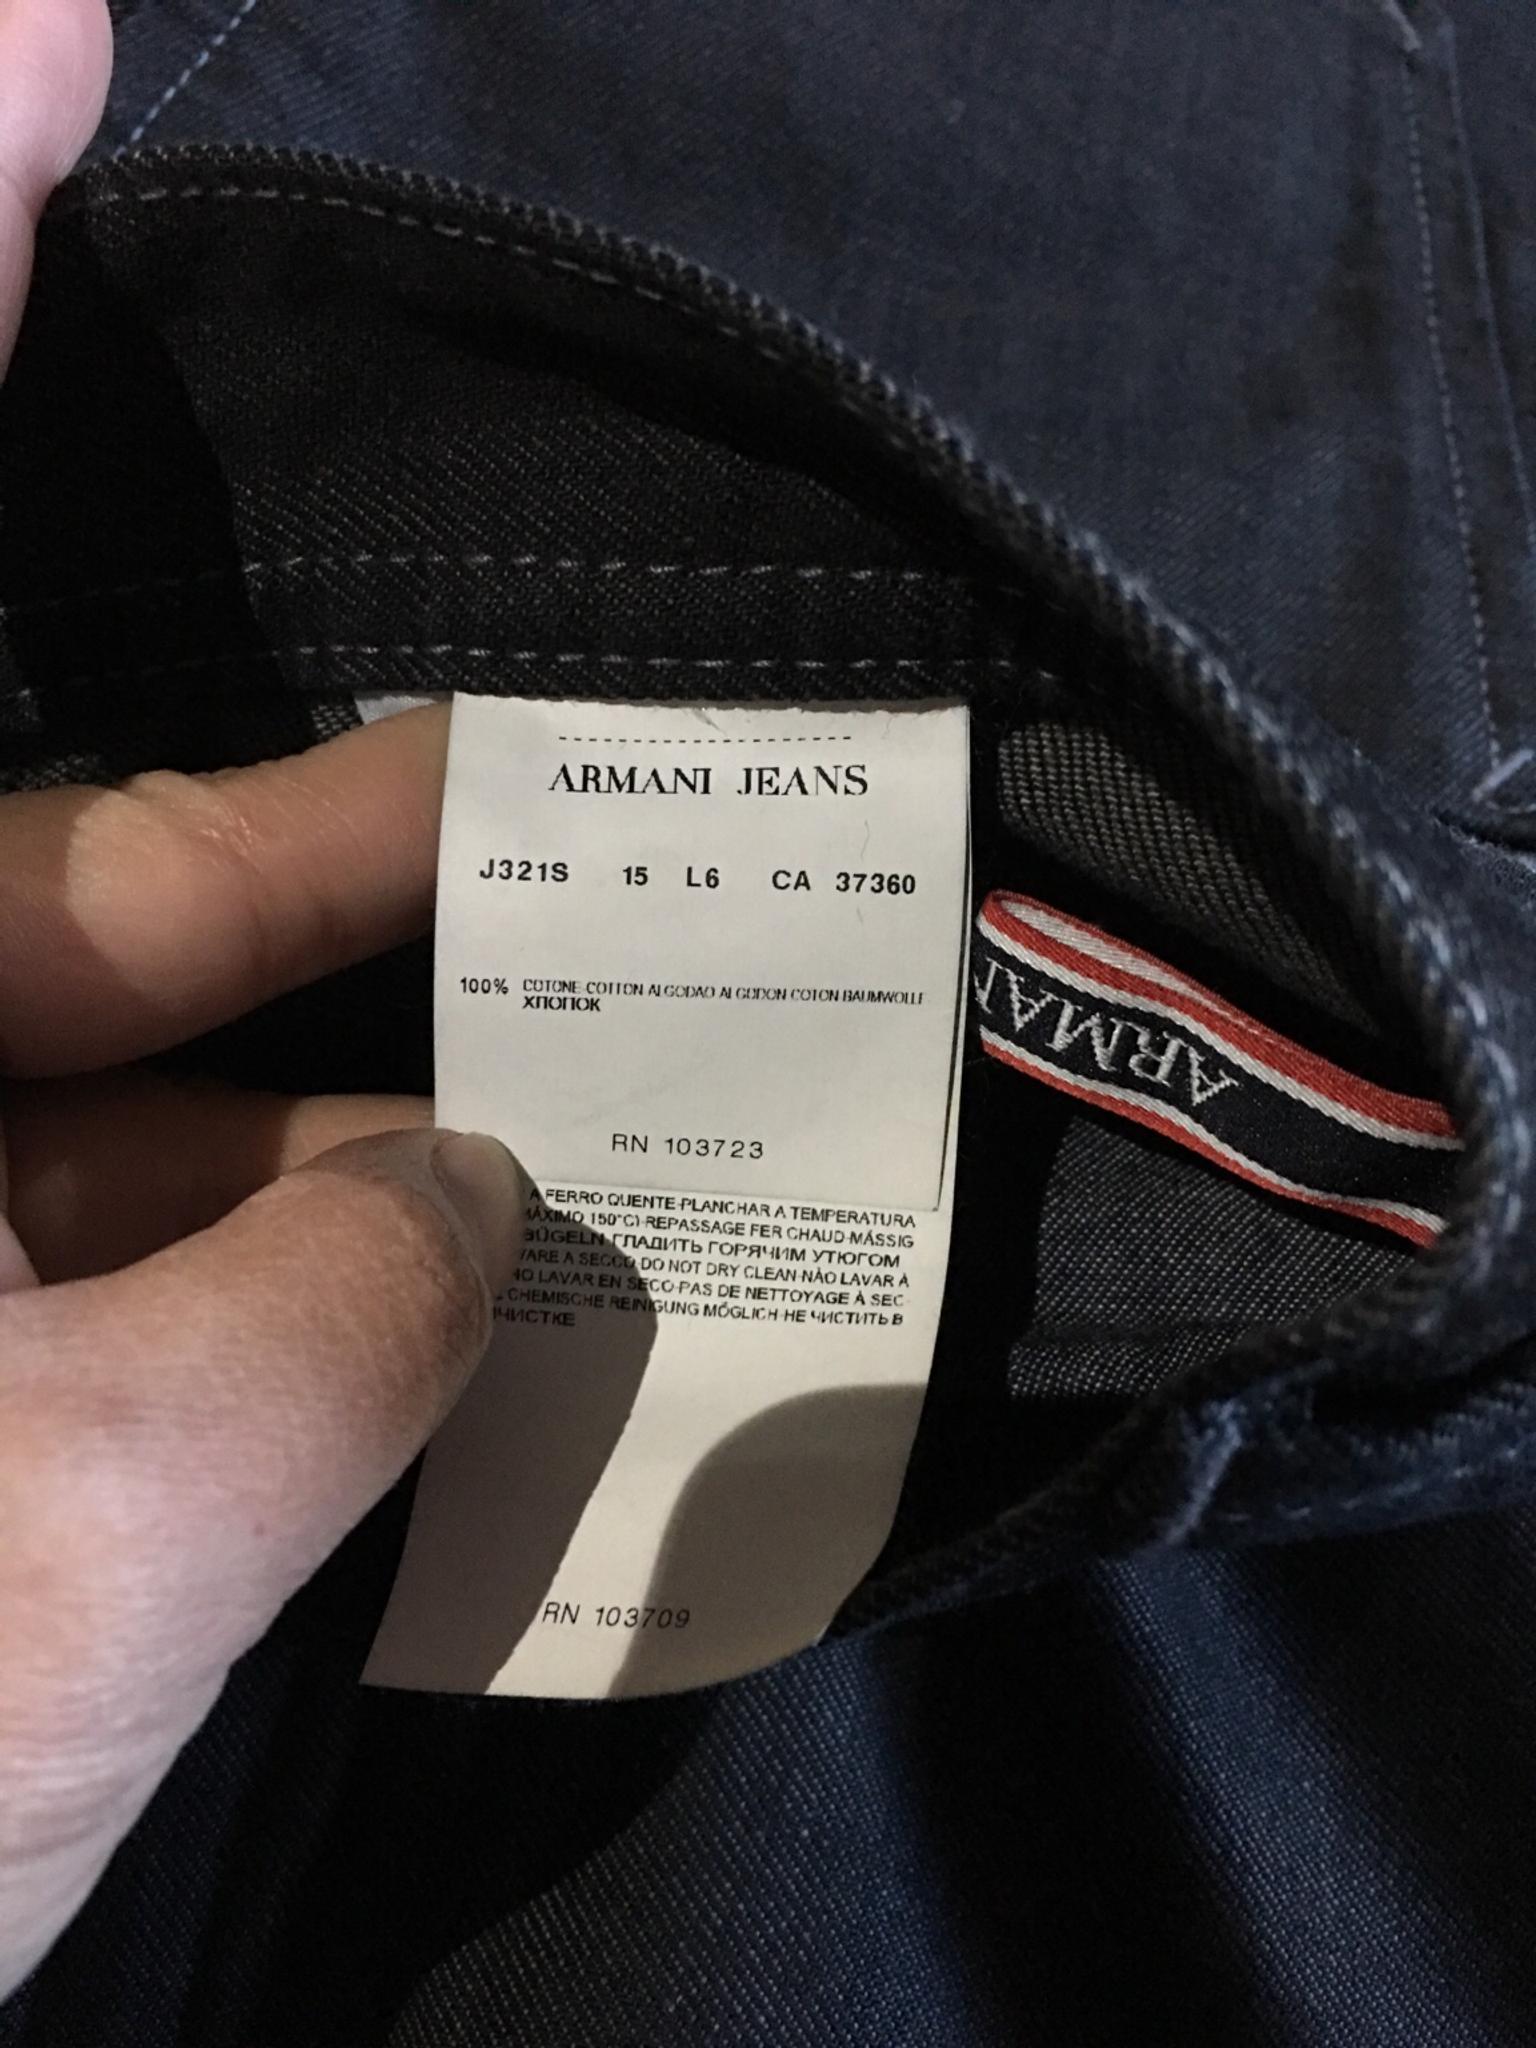 armani jeans ca 37360